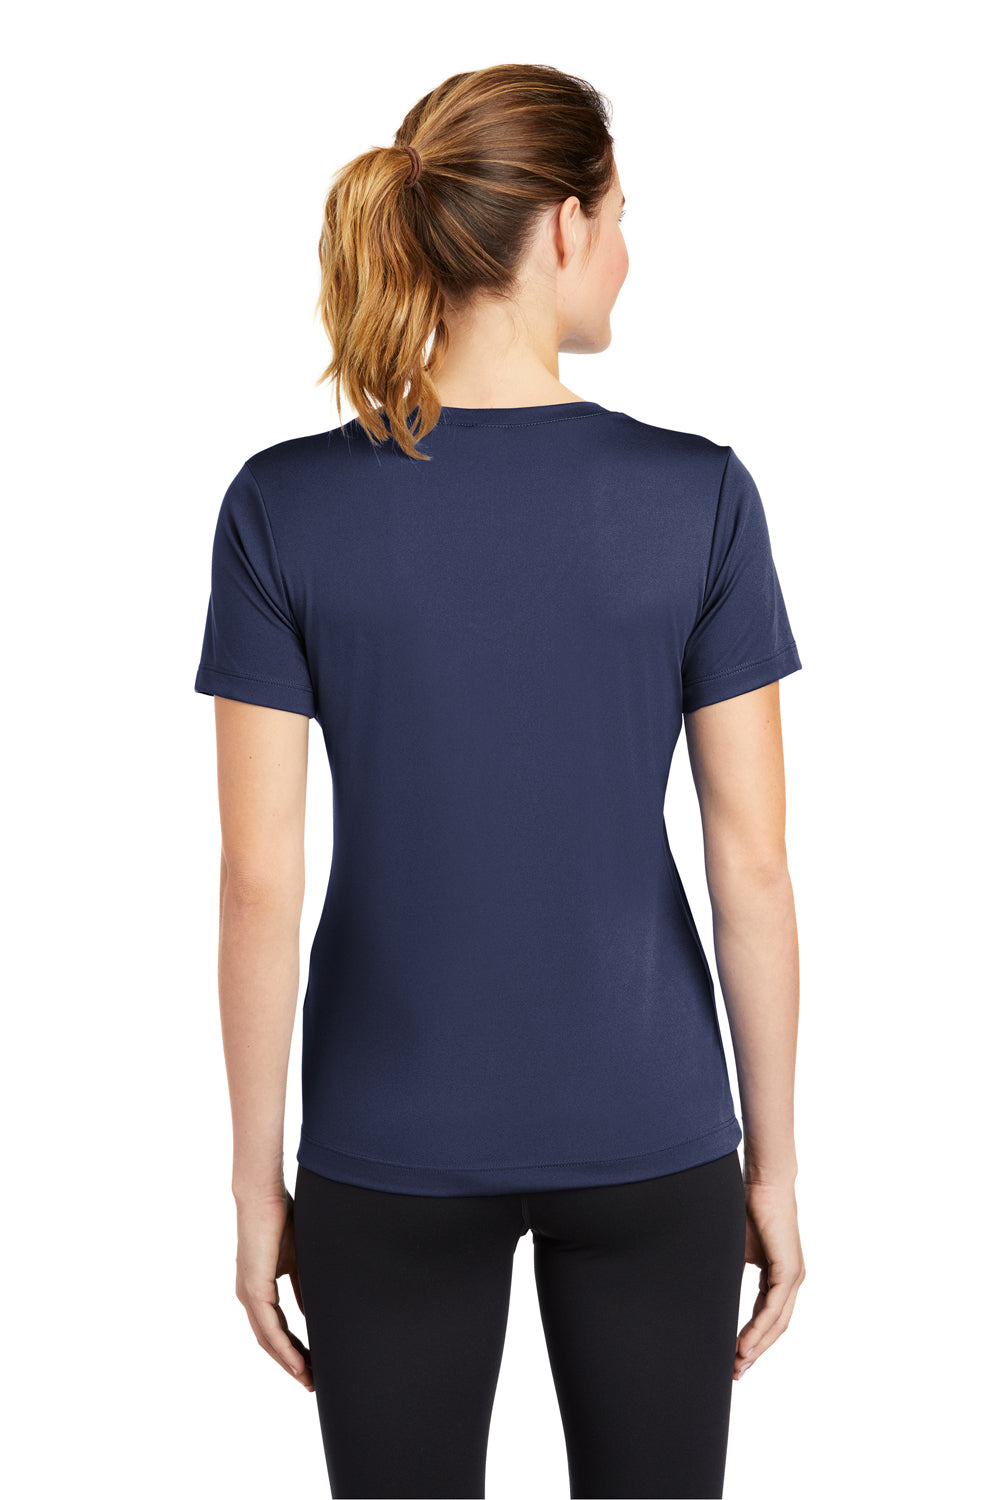 Sport-Tek LST353 Womens Competitor Moisture Wicking Short Sleeve V-Neck T-Shirt Navy Blue Back